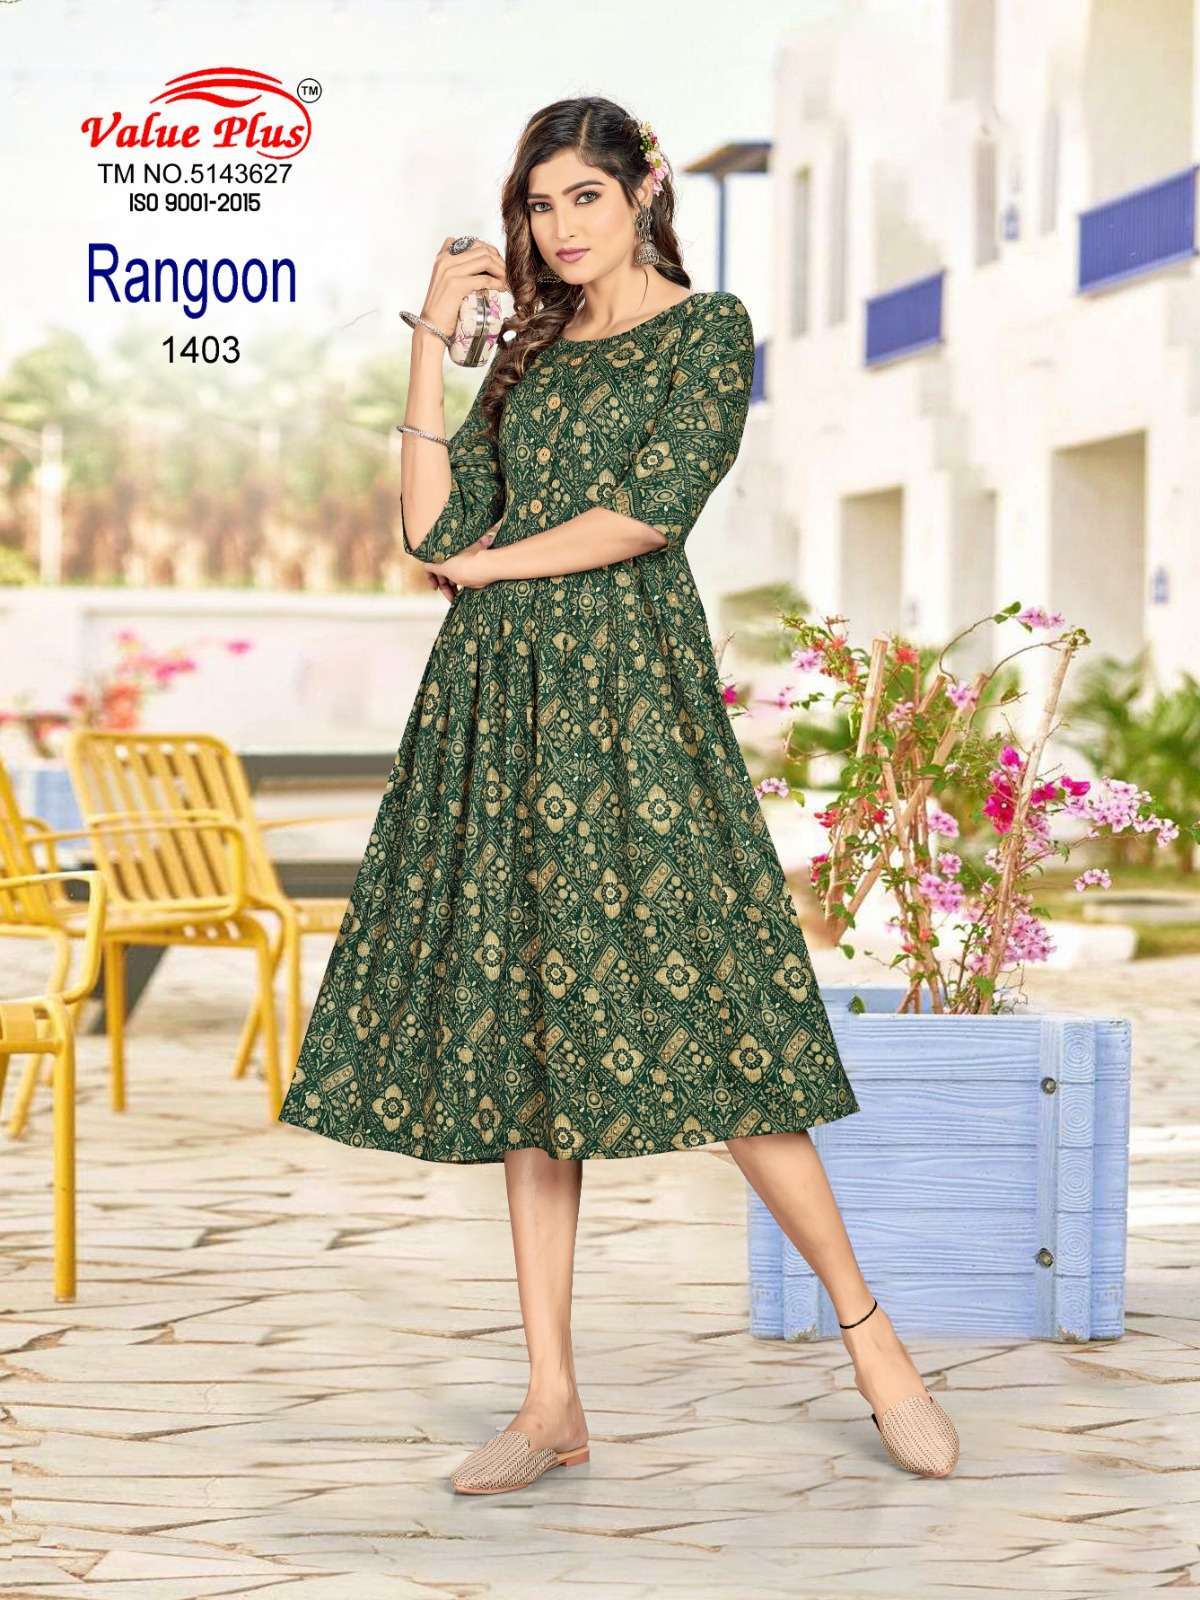 RANGOON Vol 6. D - 1403 Reyon Gown Kurti Wholesale surat india